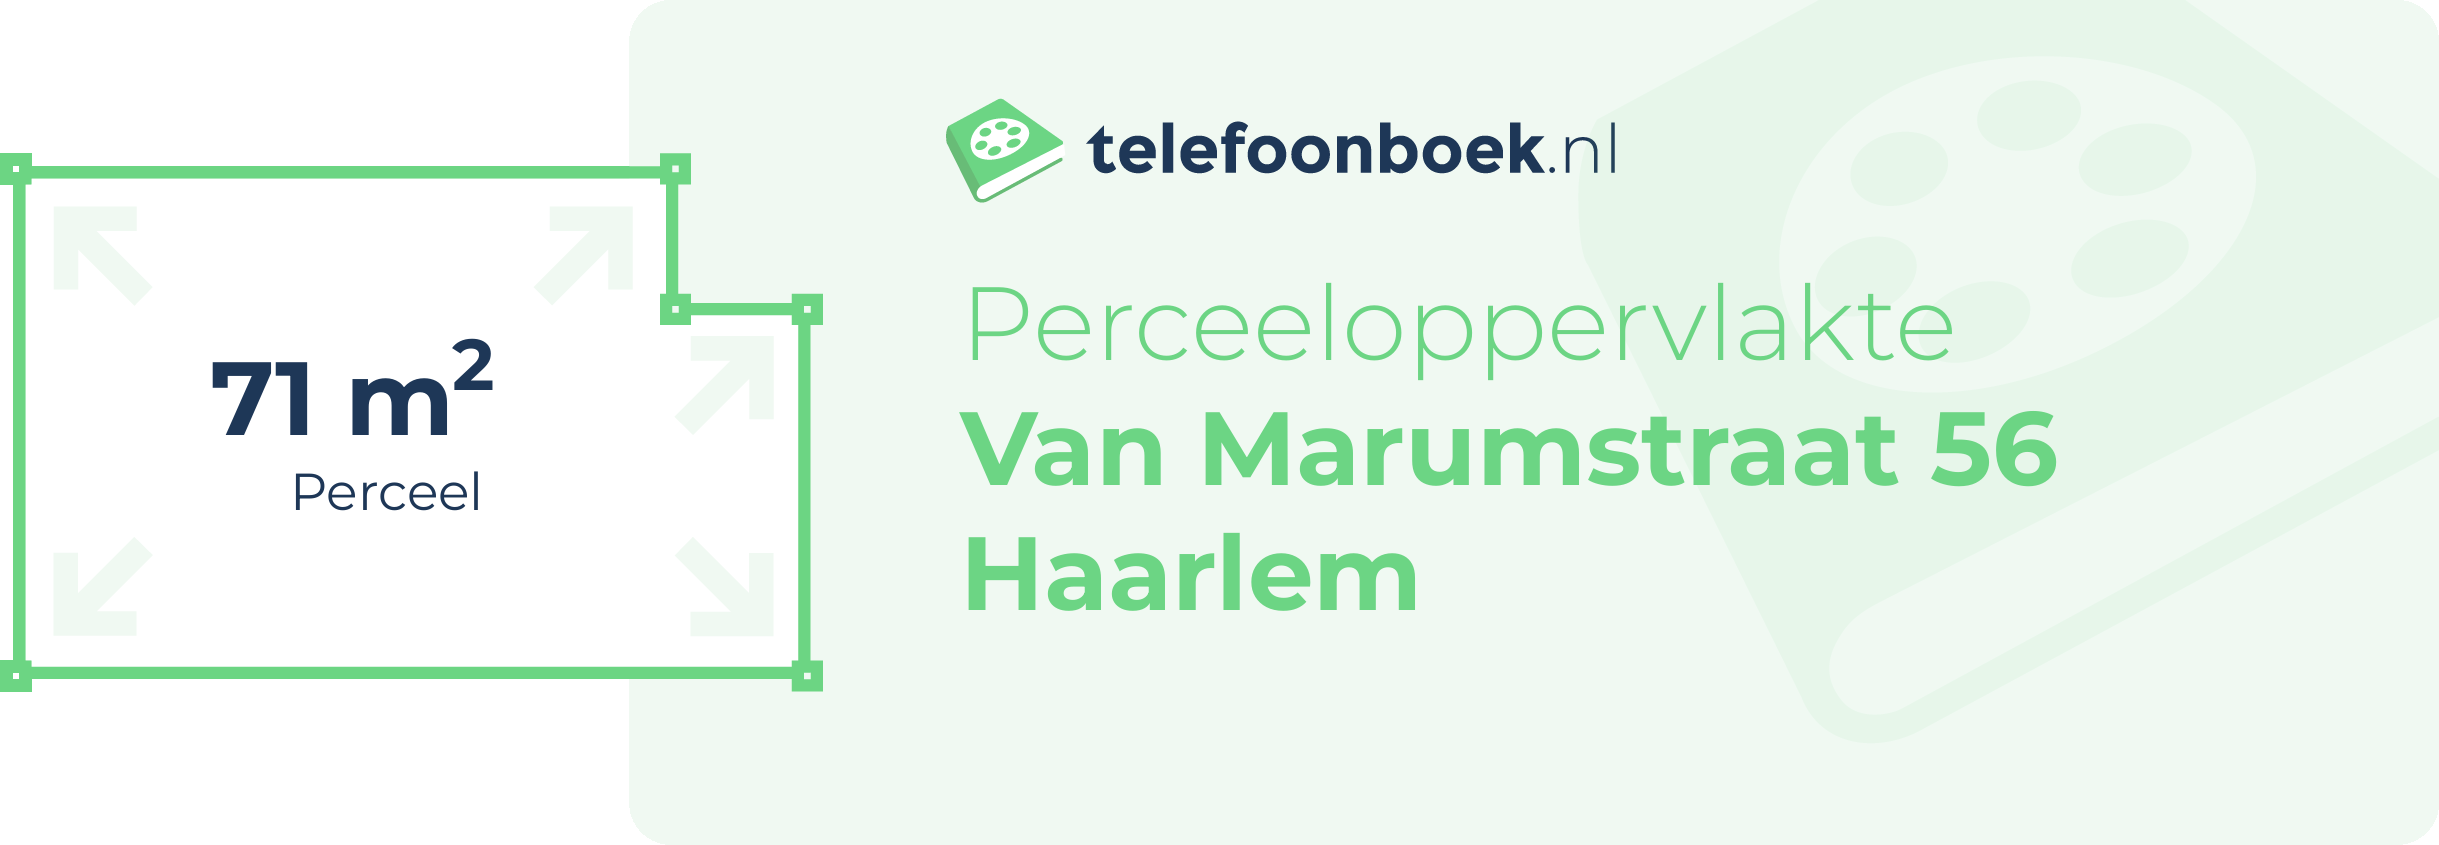 Perceeloppervlakte Van Marumstraat 56 Haarlem